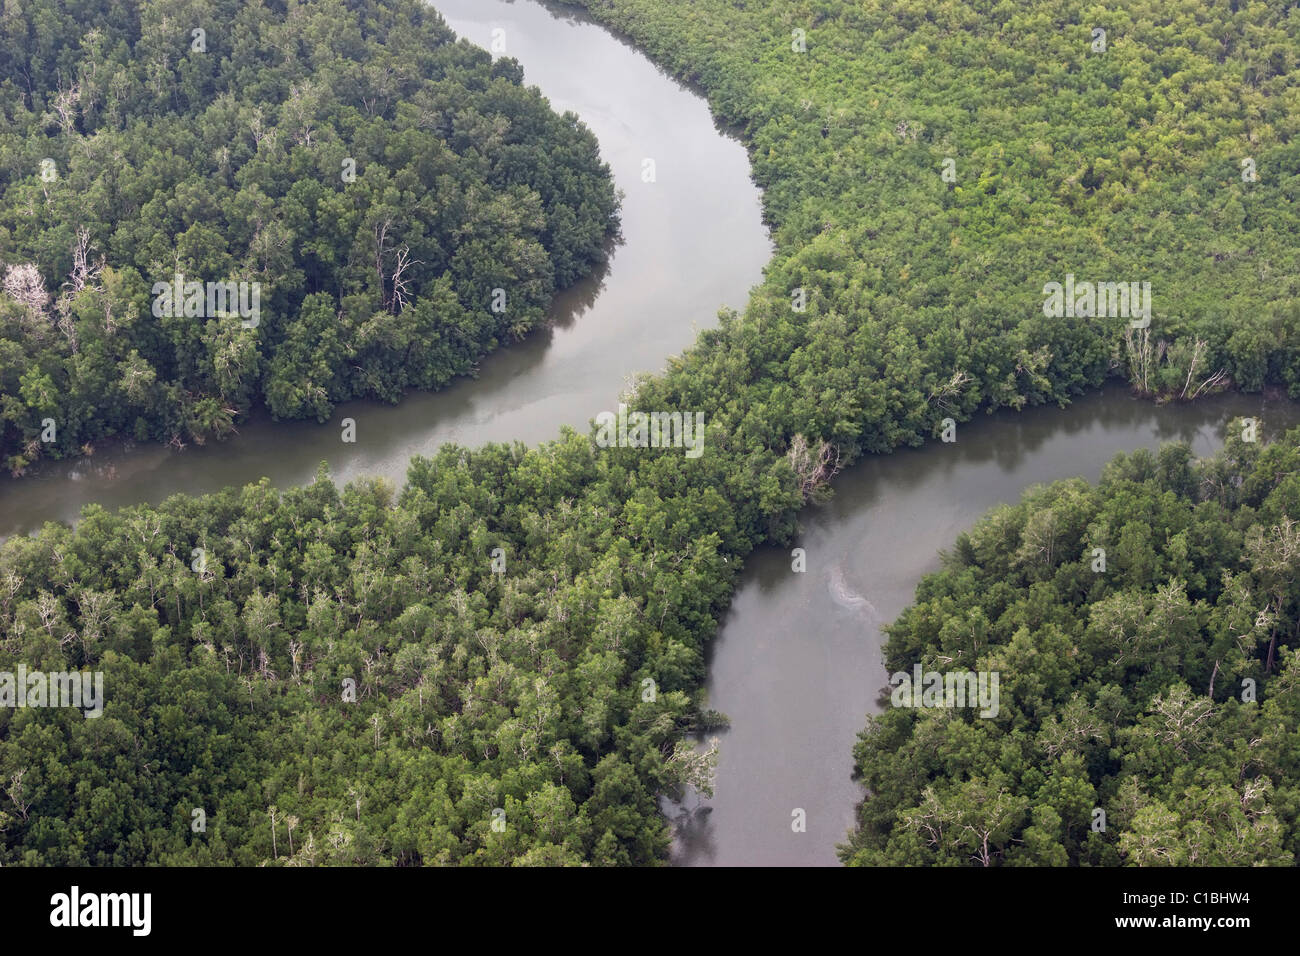 Río Gabón vista aérea oxbow bend bosque de árboles de la selva Foto de stock